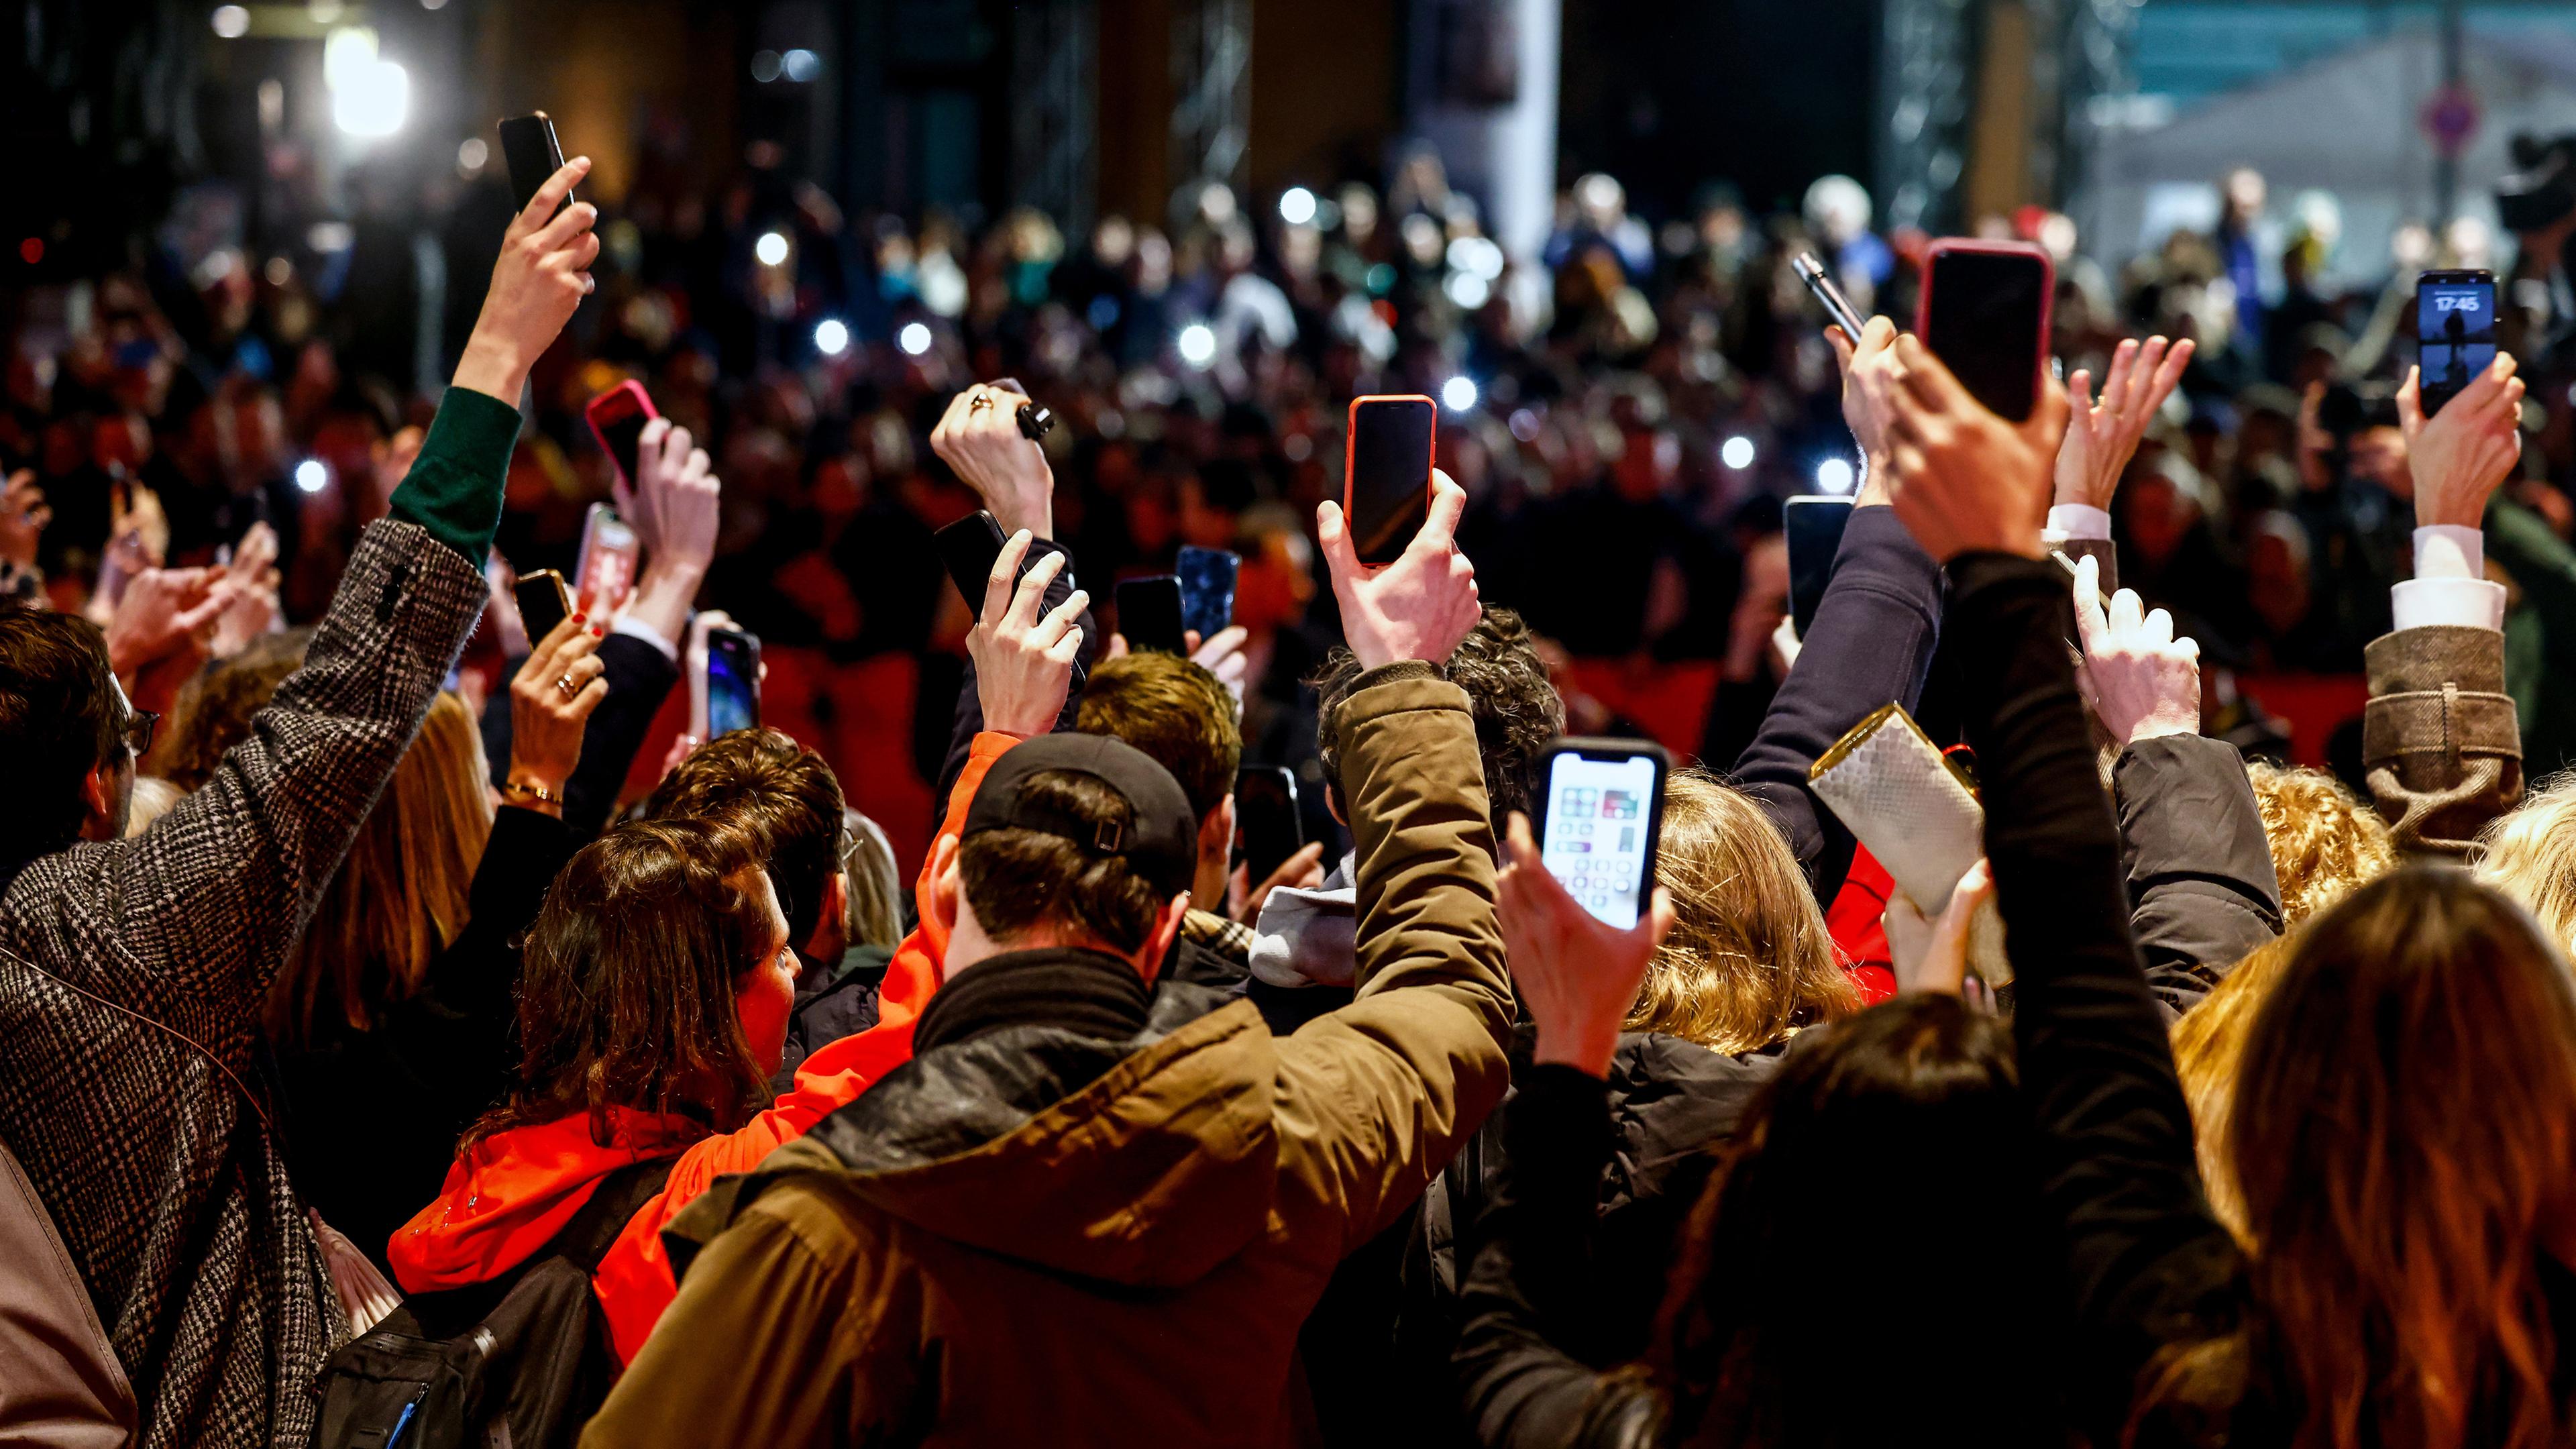 Filmemacher protestieren auf dem roten Teppich vor der Eröffnungsfeier der 74. Internationalen Filmfestspiele Berlin "Berlinale" in Berlin, Deutschland, am 15.02.2024 für "Demokratie, Vielfalt und ein friedliches Miteinander".